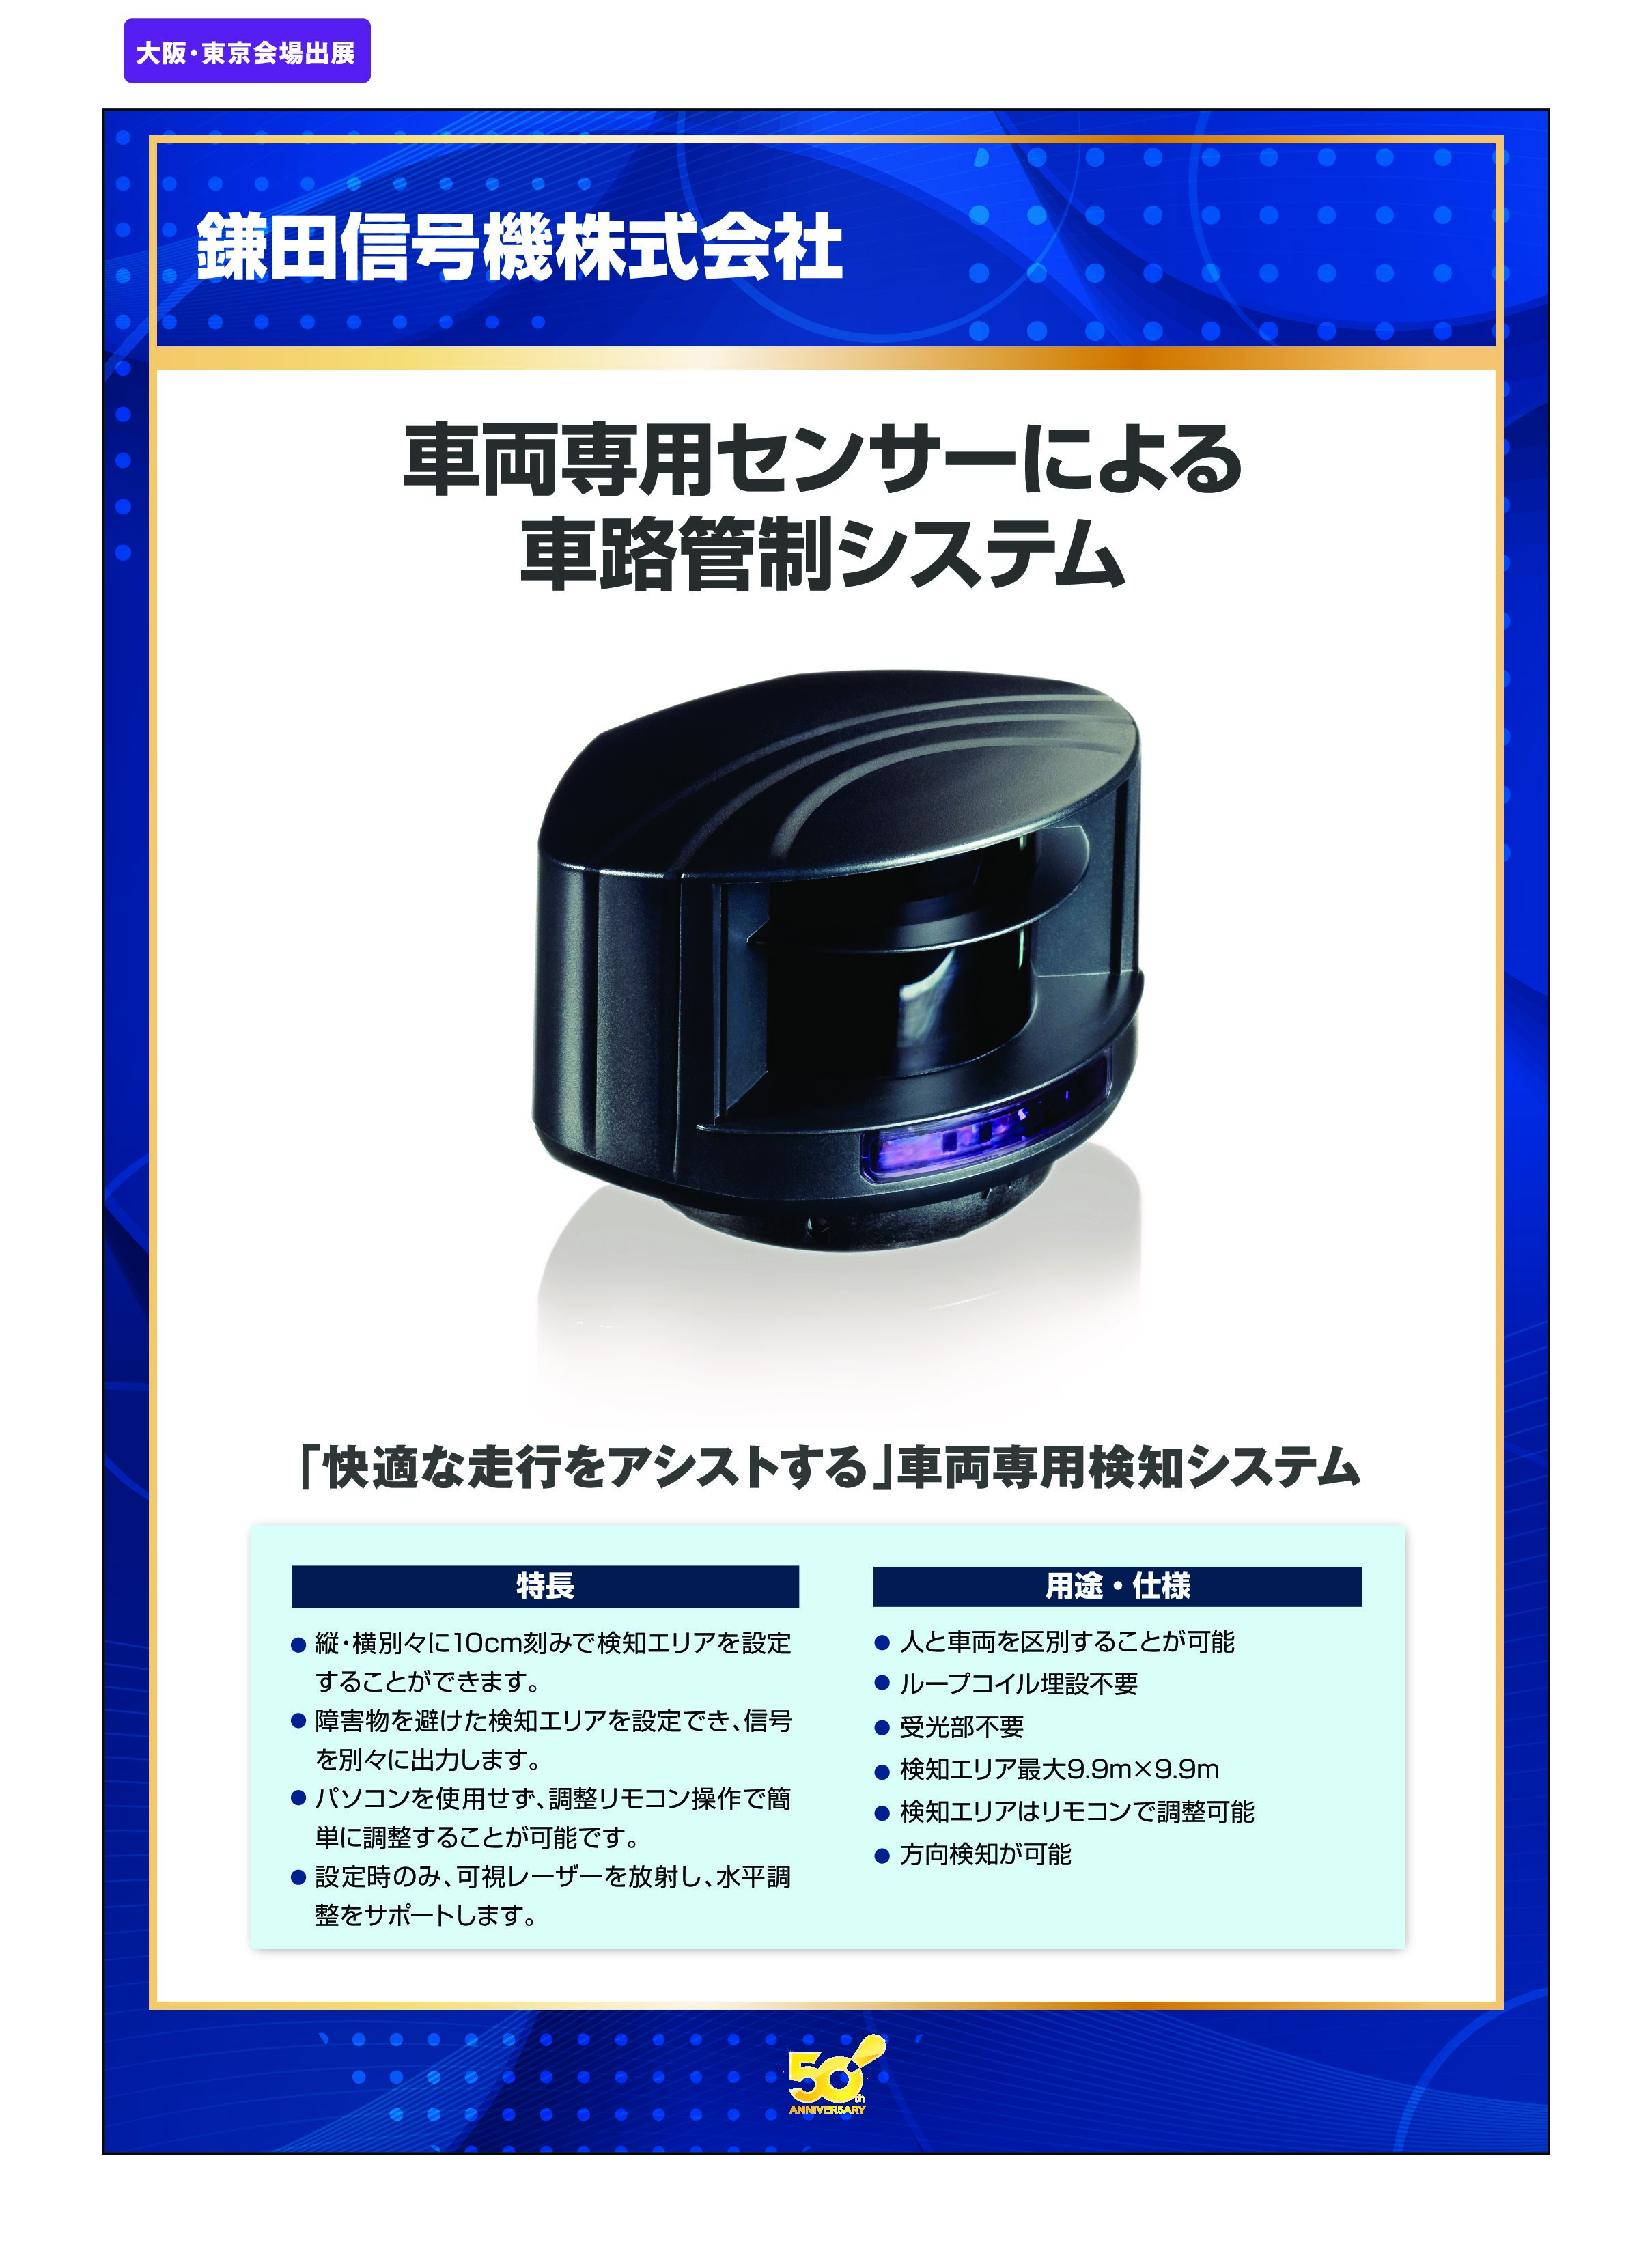 「車両専用センサーによる 車路管制システム」鎌田信号機株式会社の画像